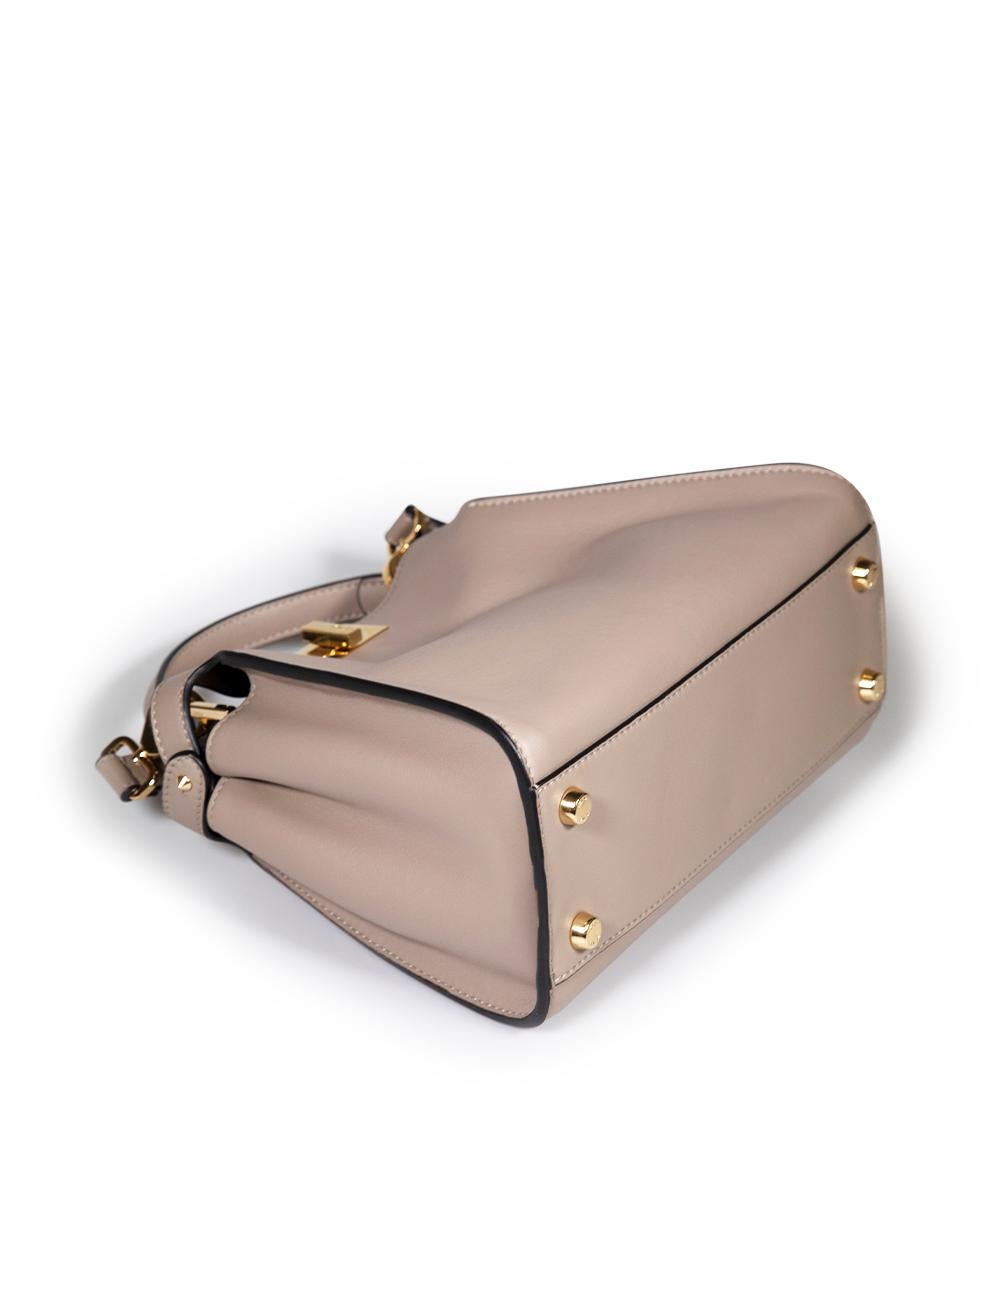 Fendi Taupe Leather Vitello Medium Peekaboo Top Handle Bag 1